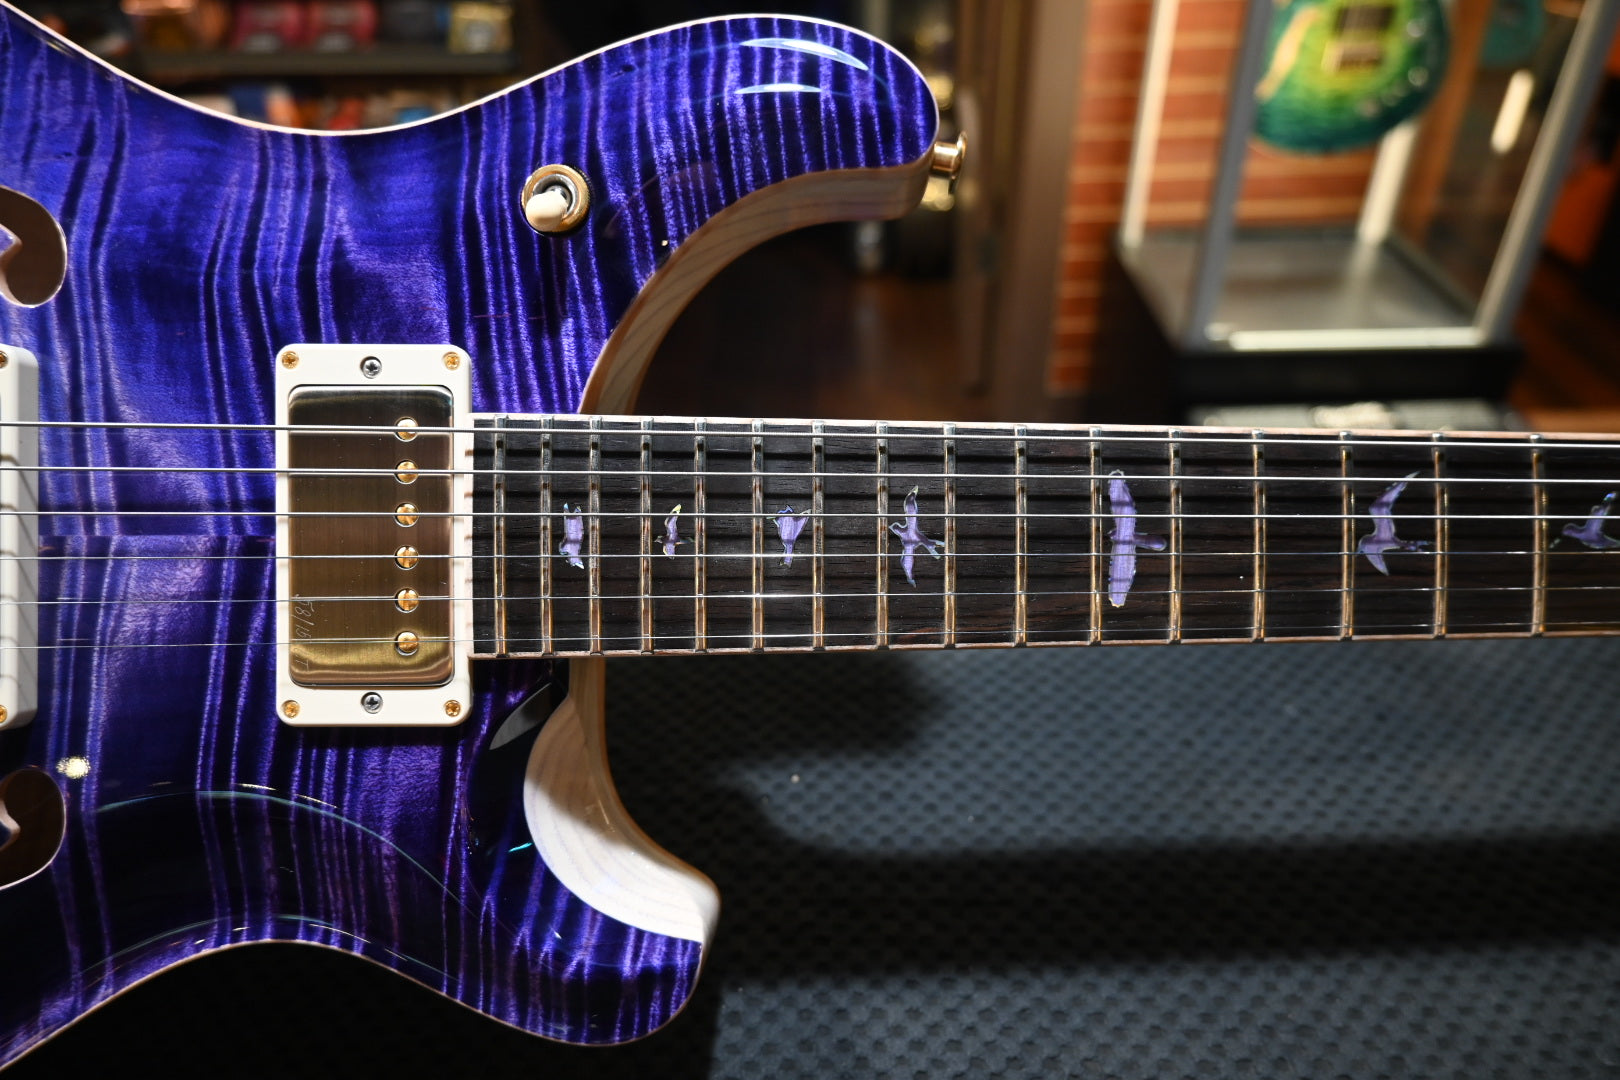 PRS Private Stock McCarty 594 Hollowbody II - Purple Dragon’s Breath Guitar #10773 - Danville Music